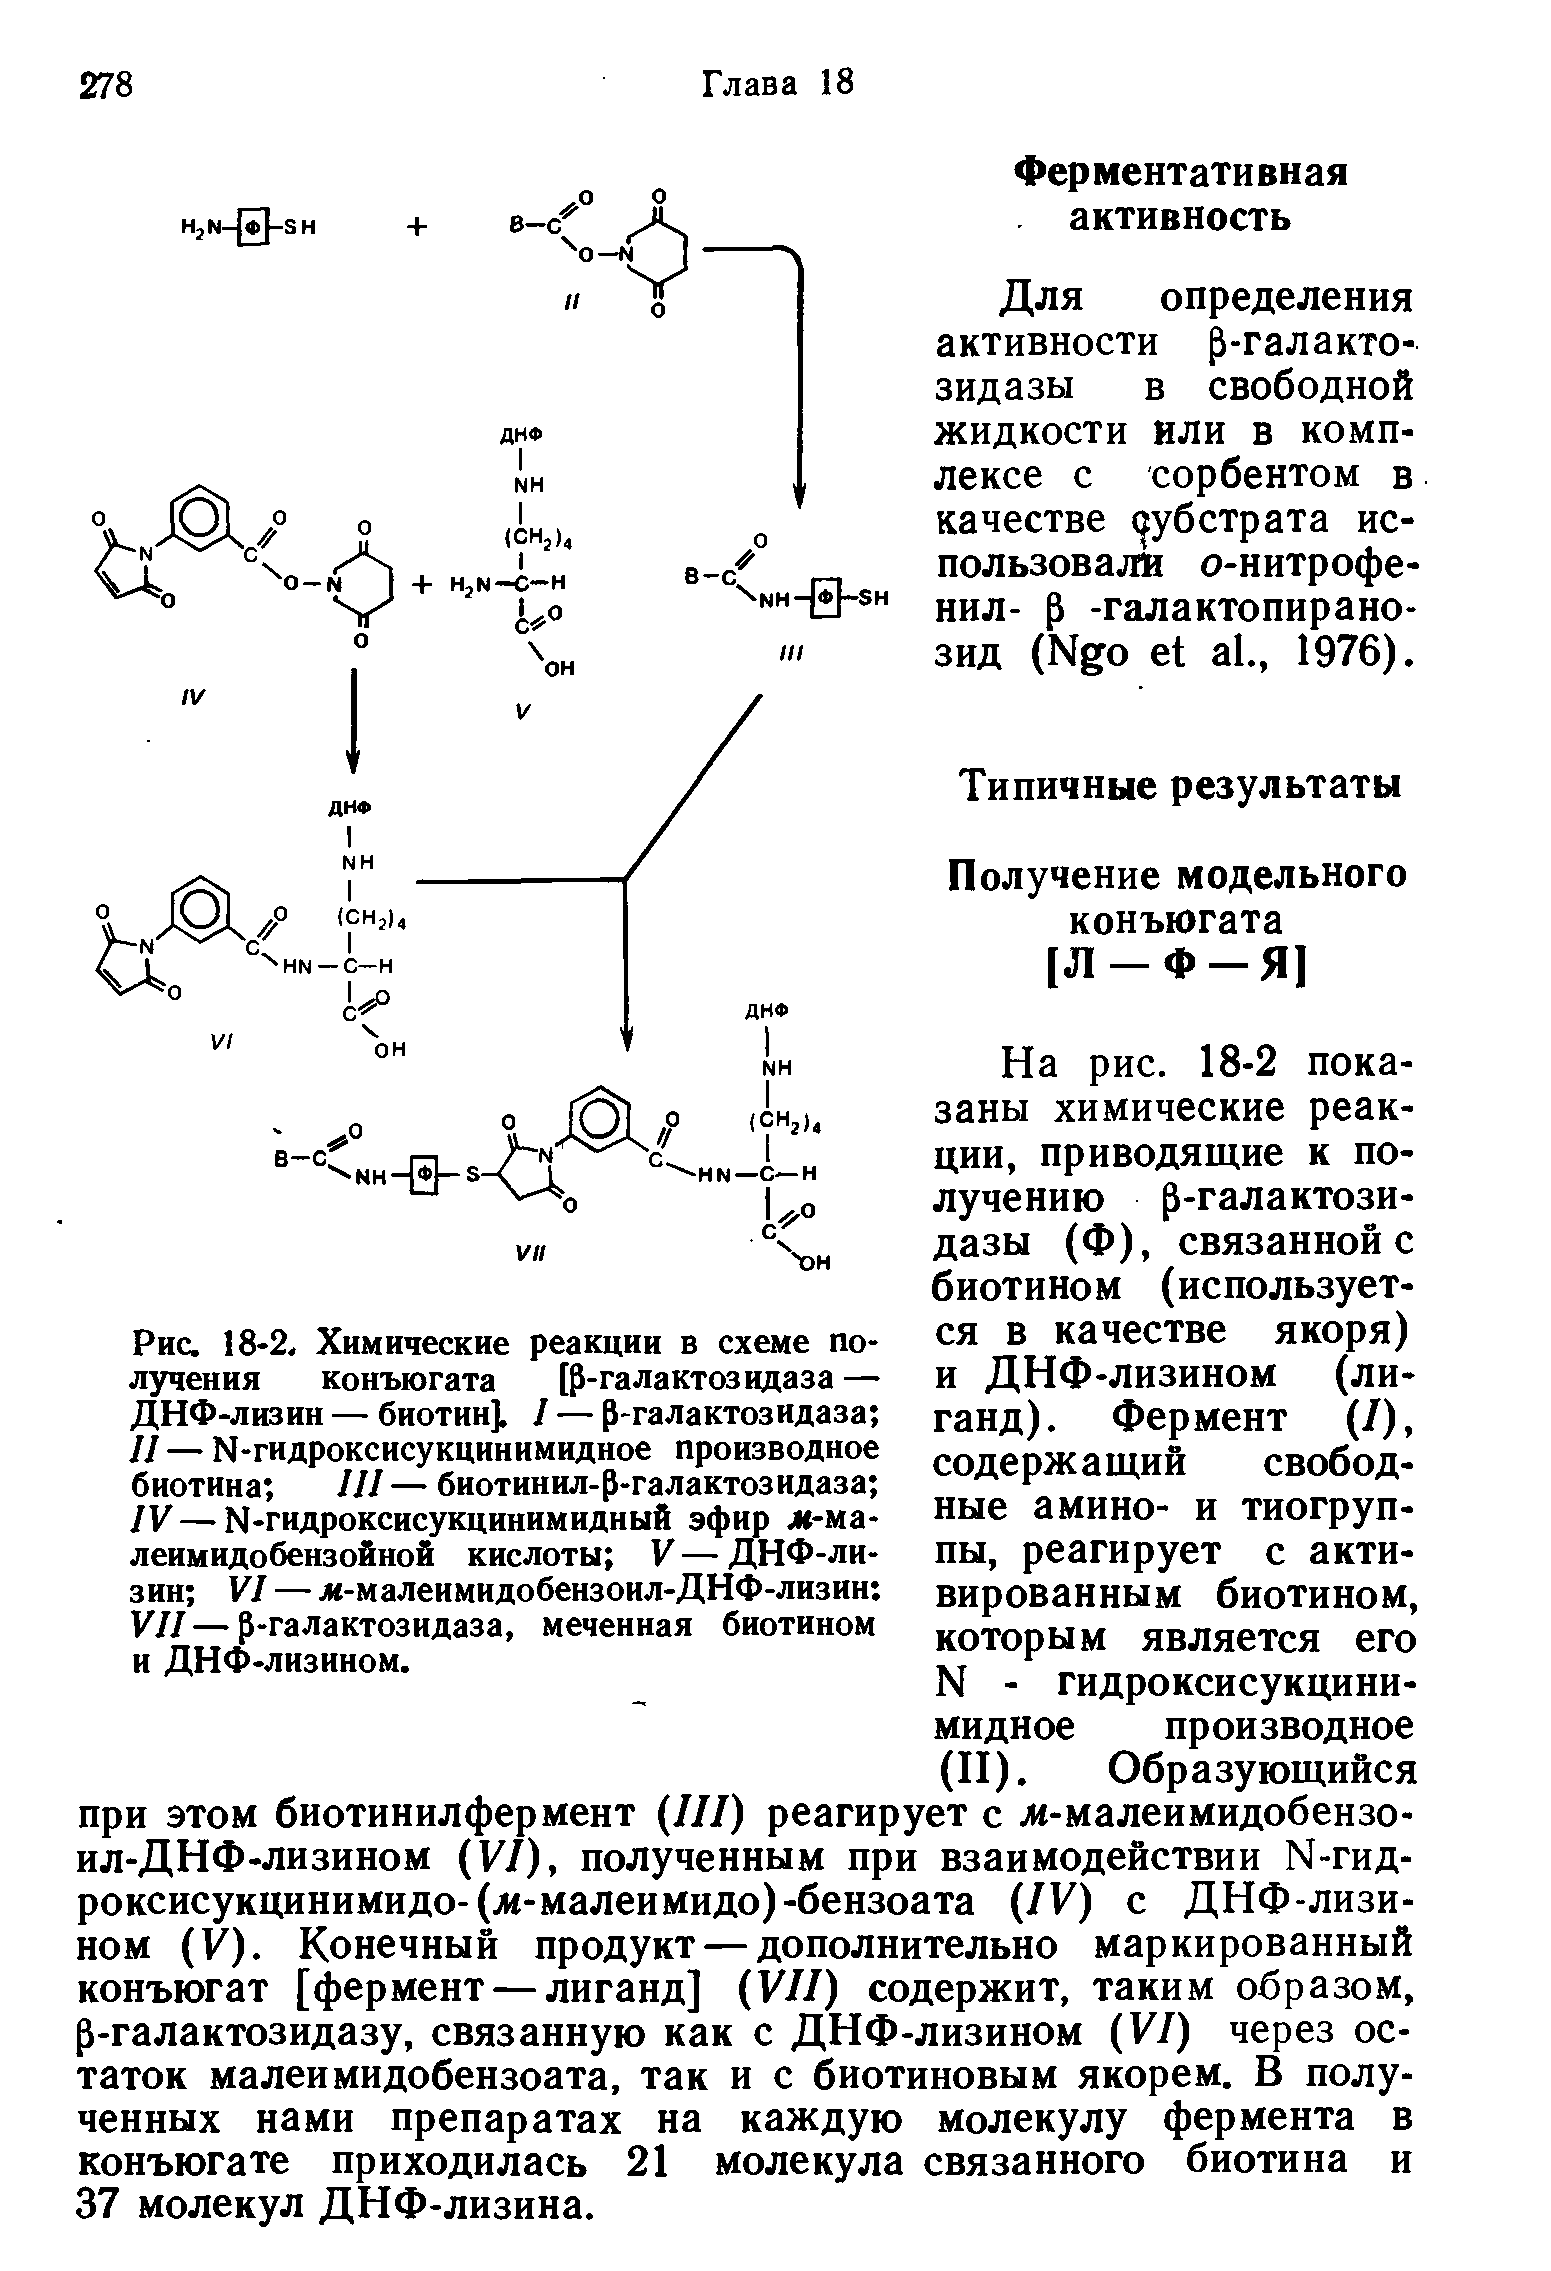 Рис. 18-2. Химические реакции в схеме получения конъюгата [р-галактозидаза — ДНФ-лизин — биотин]. I — р-галактозидаза II — Ы-гидроксисукцинимидное производное биотина III — биотинил-р-галактозидаза IV—И-гидроксисукцинимидный эфир ж-ма-леимидобензойной кислоты V — ДНФ-лизин VI — ж-малеимидобензоил-ДНФ-лизин VII—р-галактозидаза, меченная биотином и ДНФ-лизином.